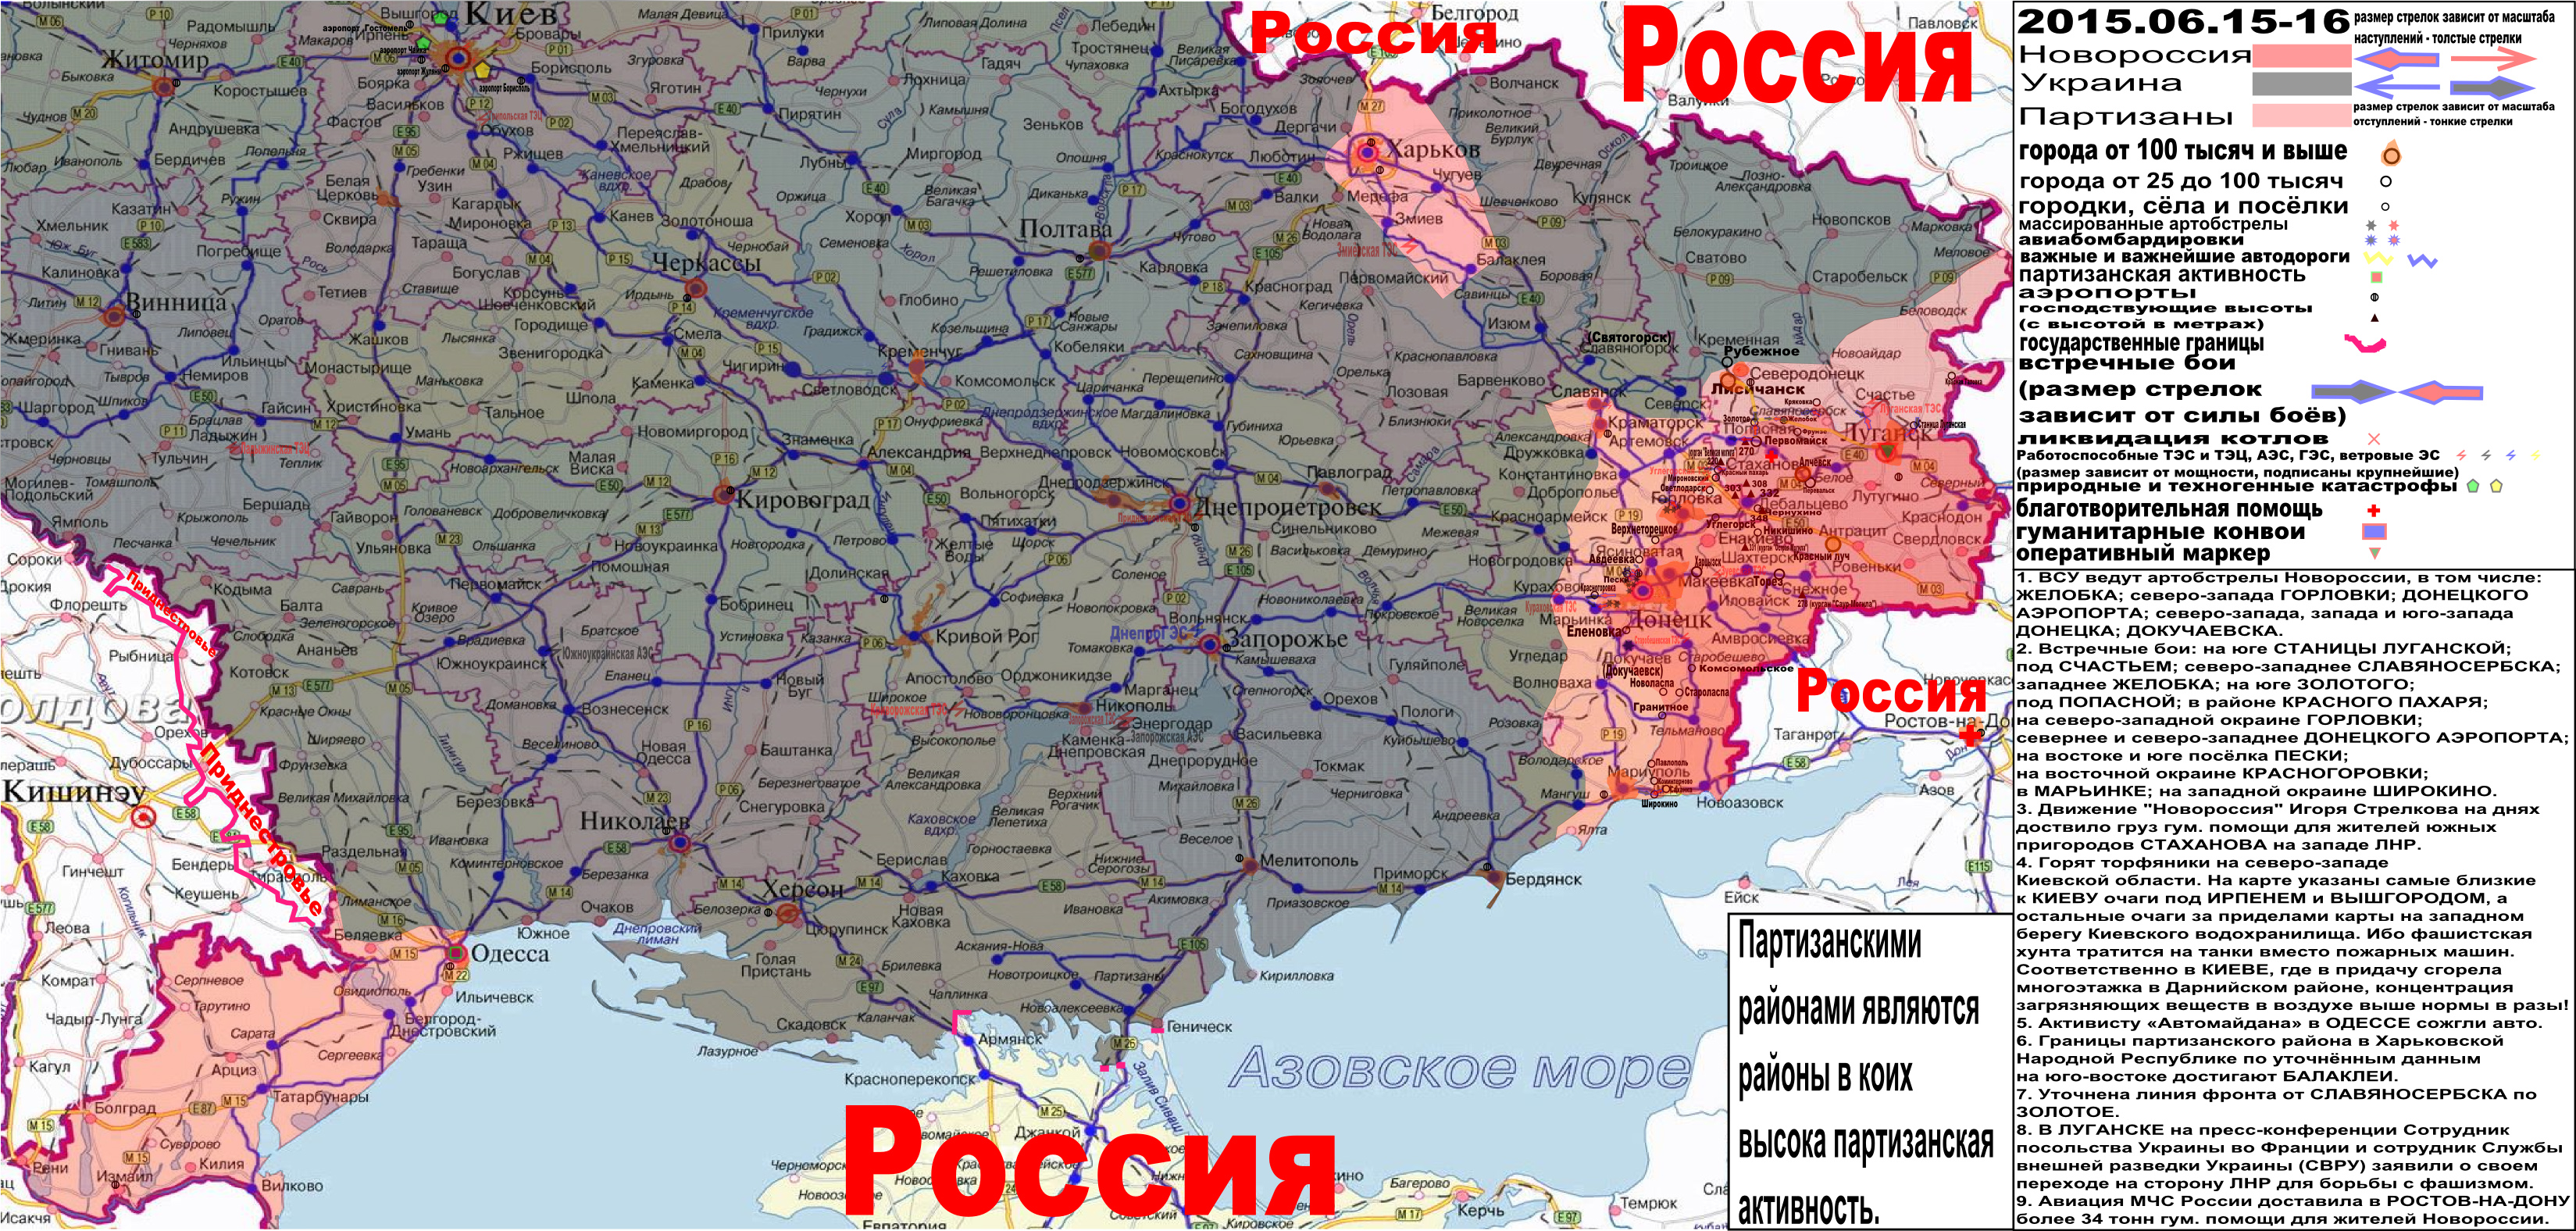 Военно-гуманитарная карта Новороссии и юга Малороссии за 15-16 июня 2015 года.